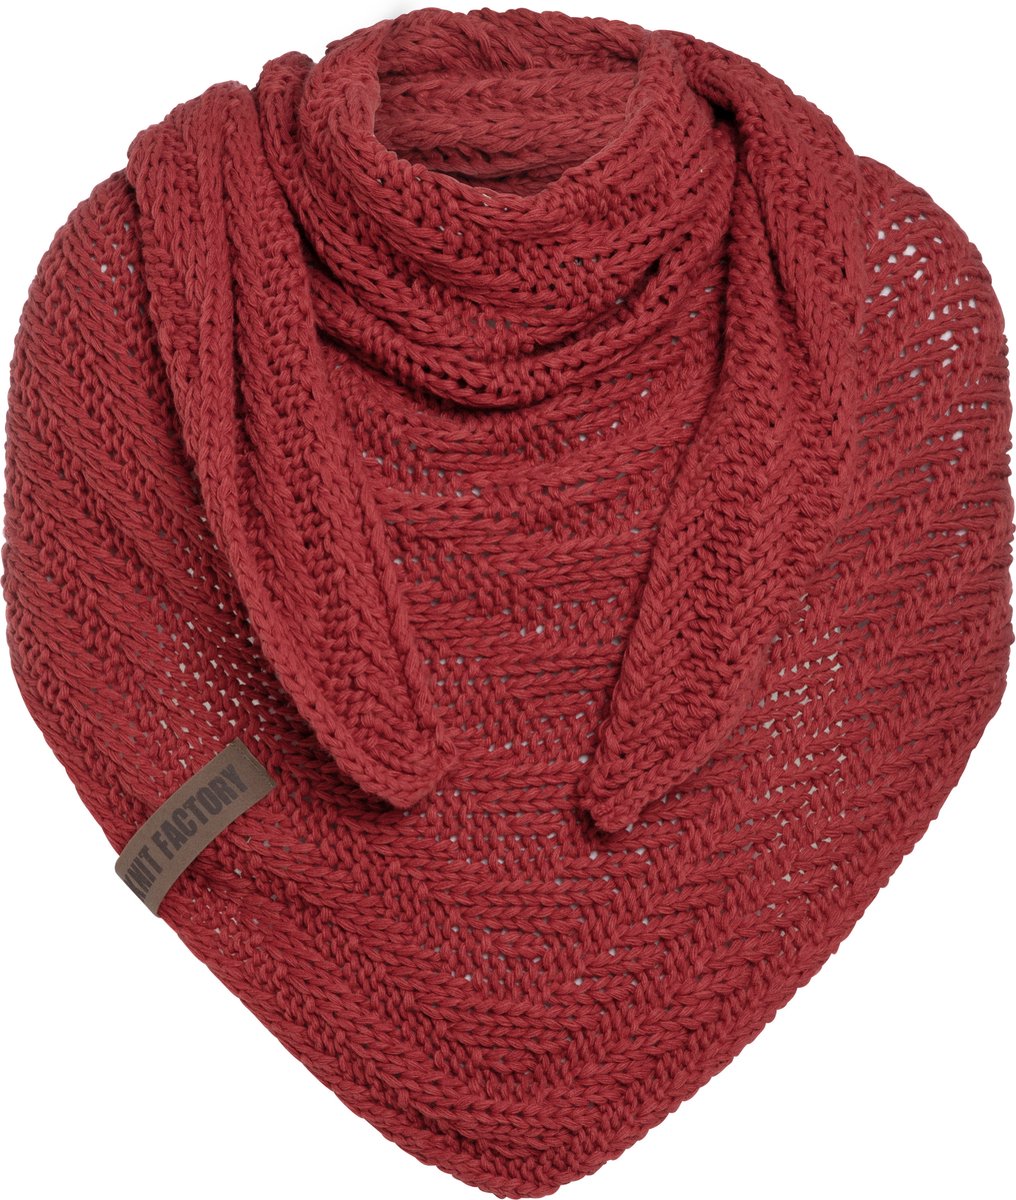 Knit Factory Sally Gebreide Omslagdoek - Driehoek Sjaal Dames - Dames sjaal - Wintersjaal - Stola - Wollen sjaal - Rode sjaal - Baked Apple - 220x85 cm - Grof gebreid